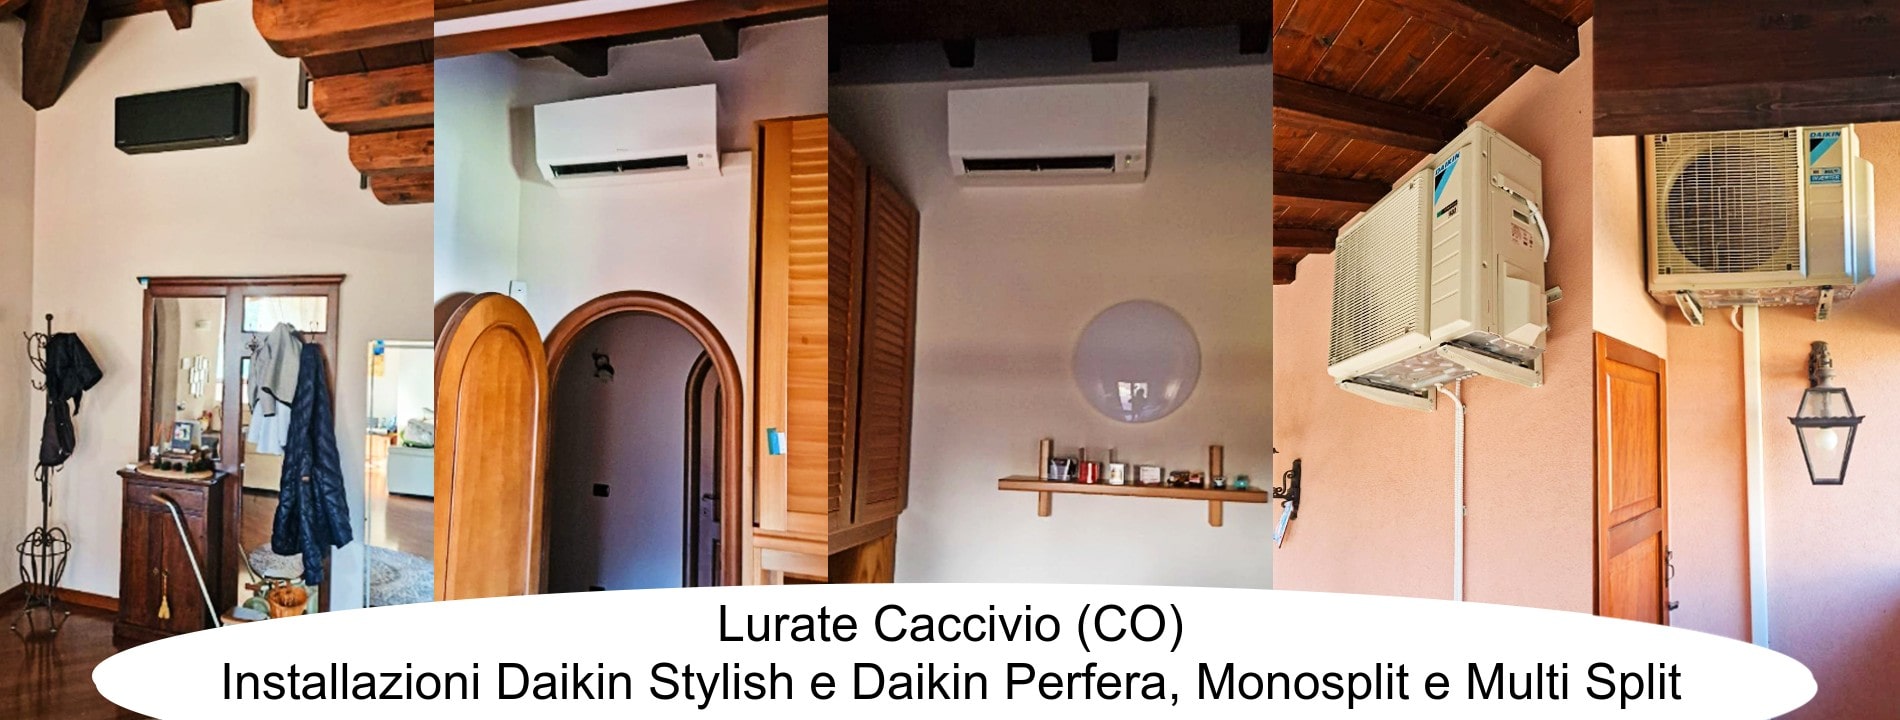 installazione Daikin Stylish e Daikin Perfera Monosplit e Multi Split, Lurate Caccivio (Como)